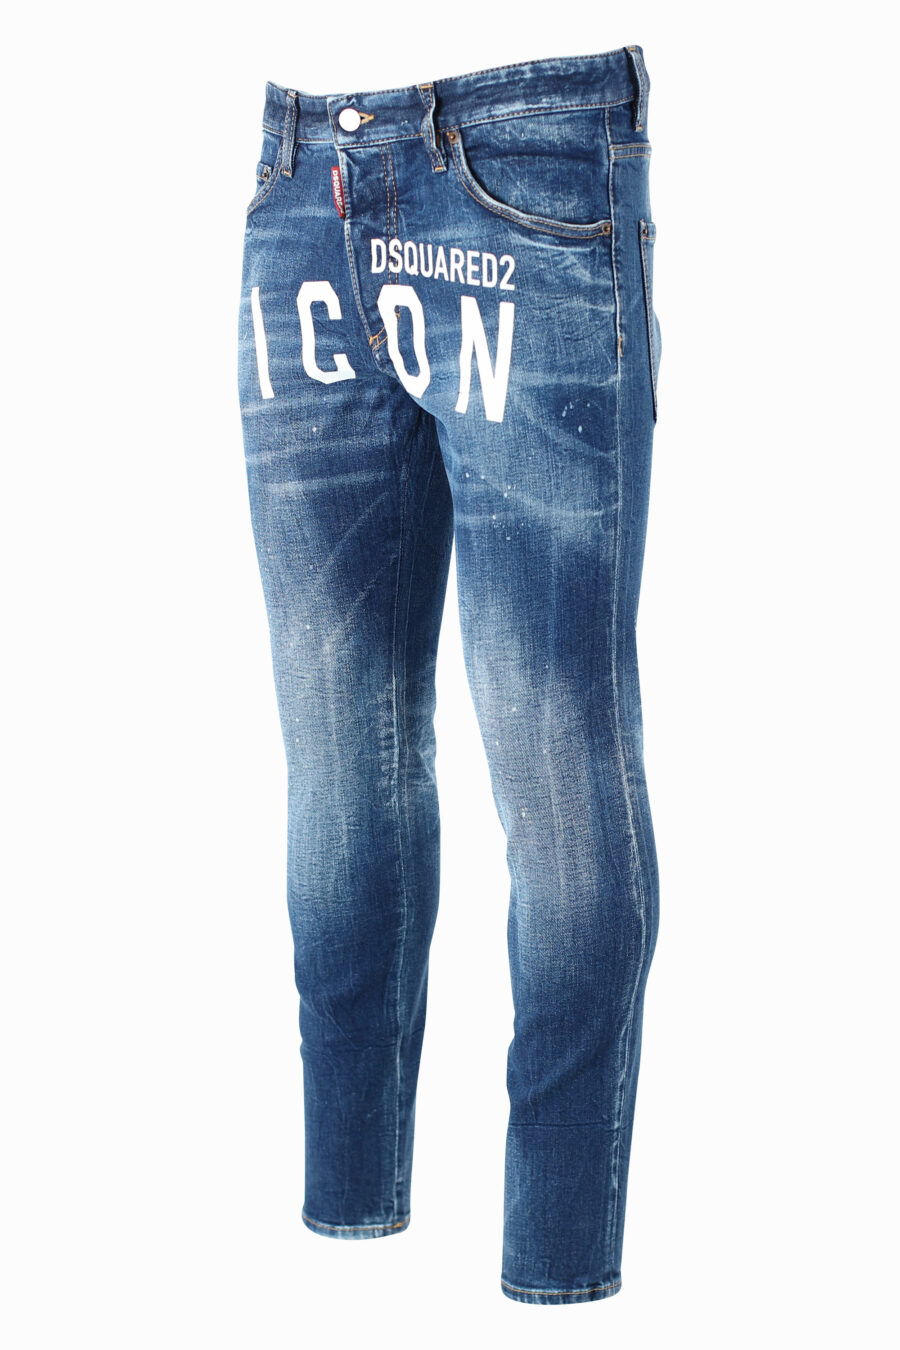 Pantalón vaquero "Skinny Dan Jean" azul con maxilogo "icon" frontal - IMG 0979